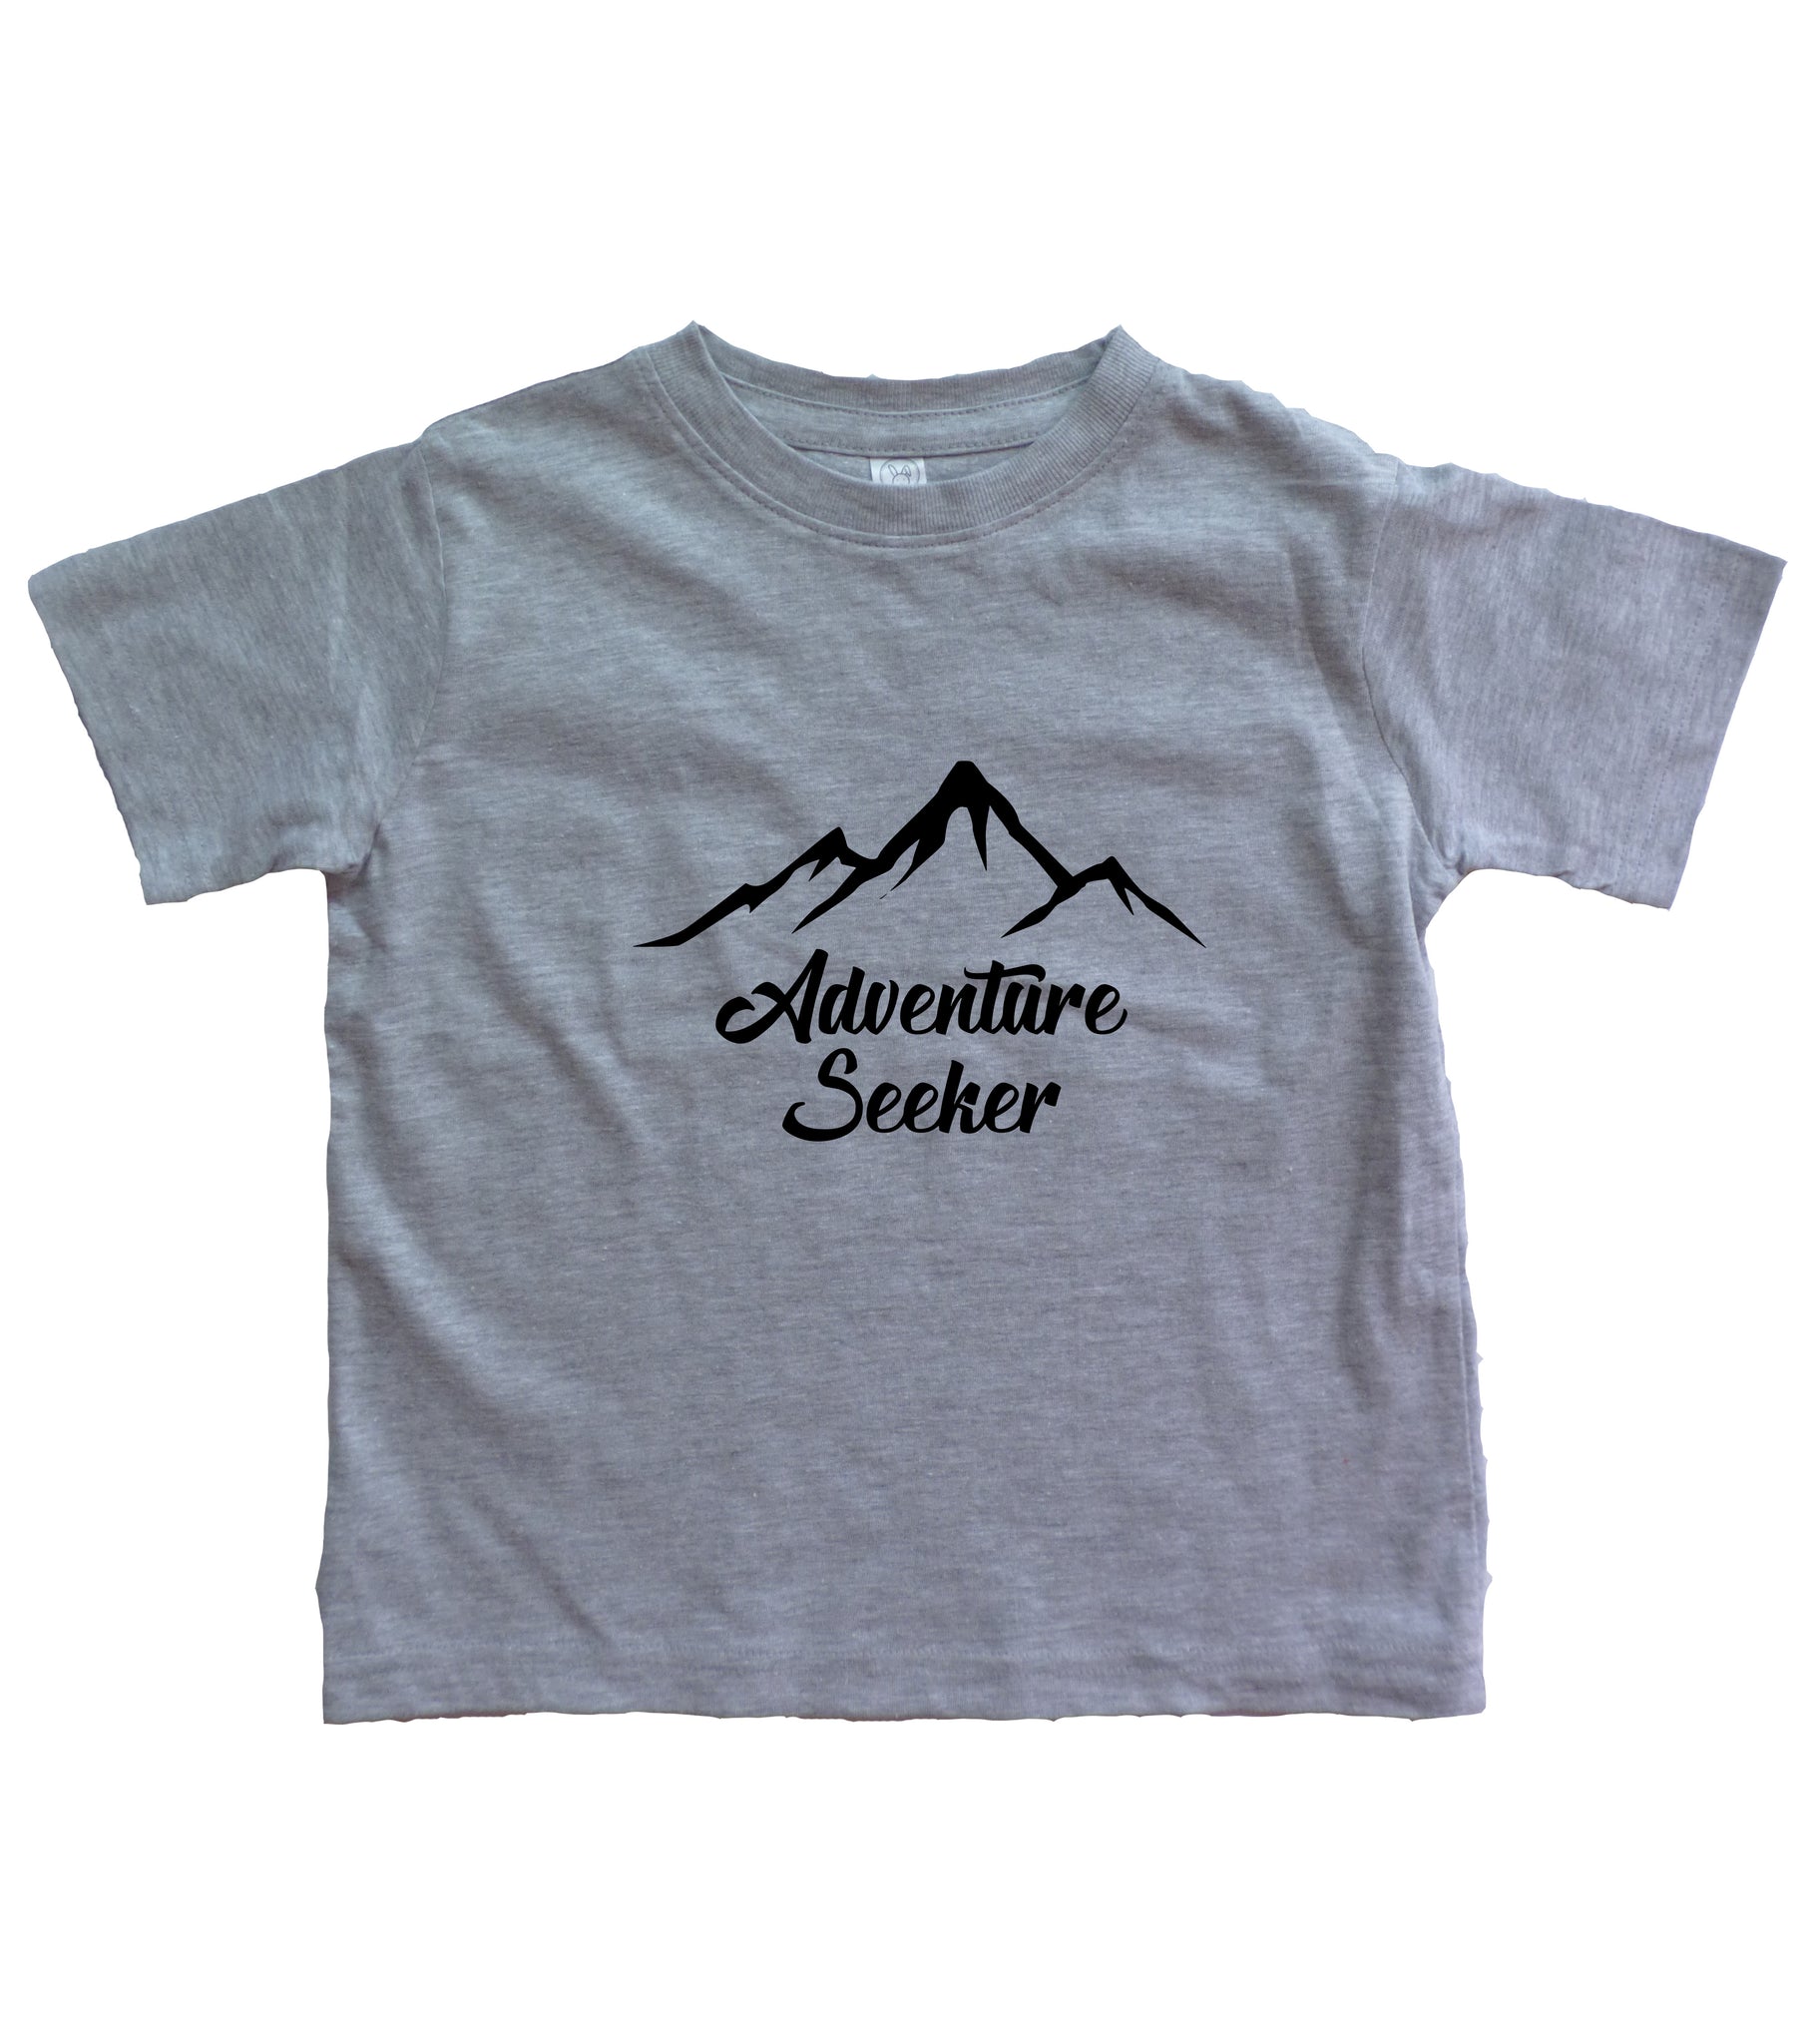 Adventure Seeker Toddler Shirt